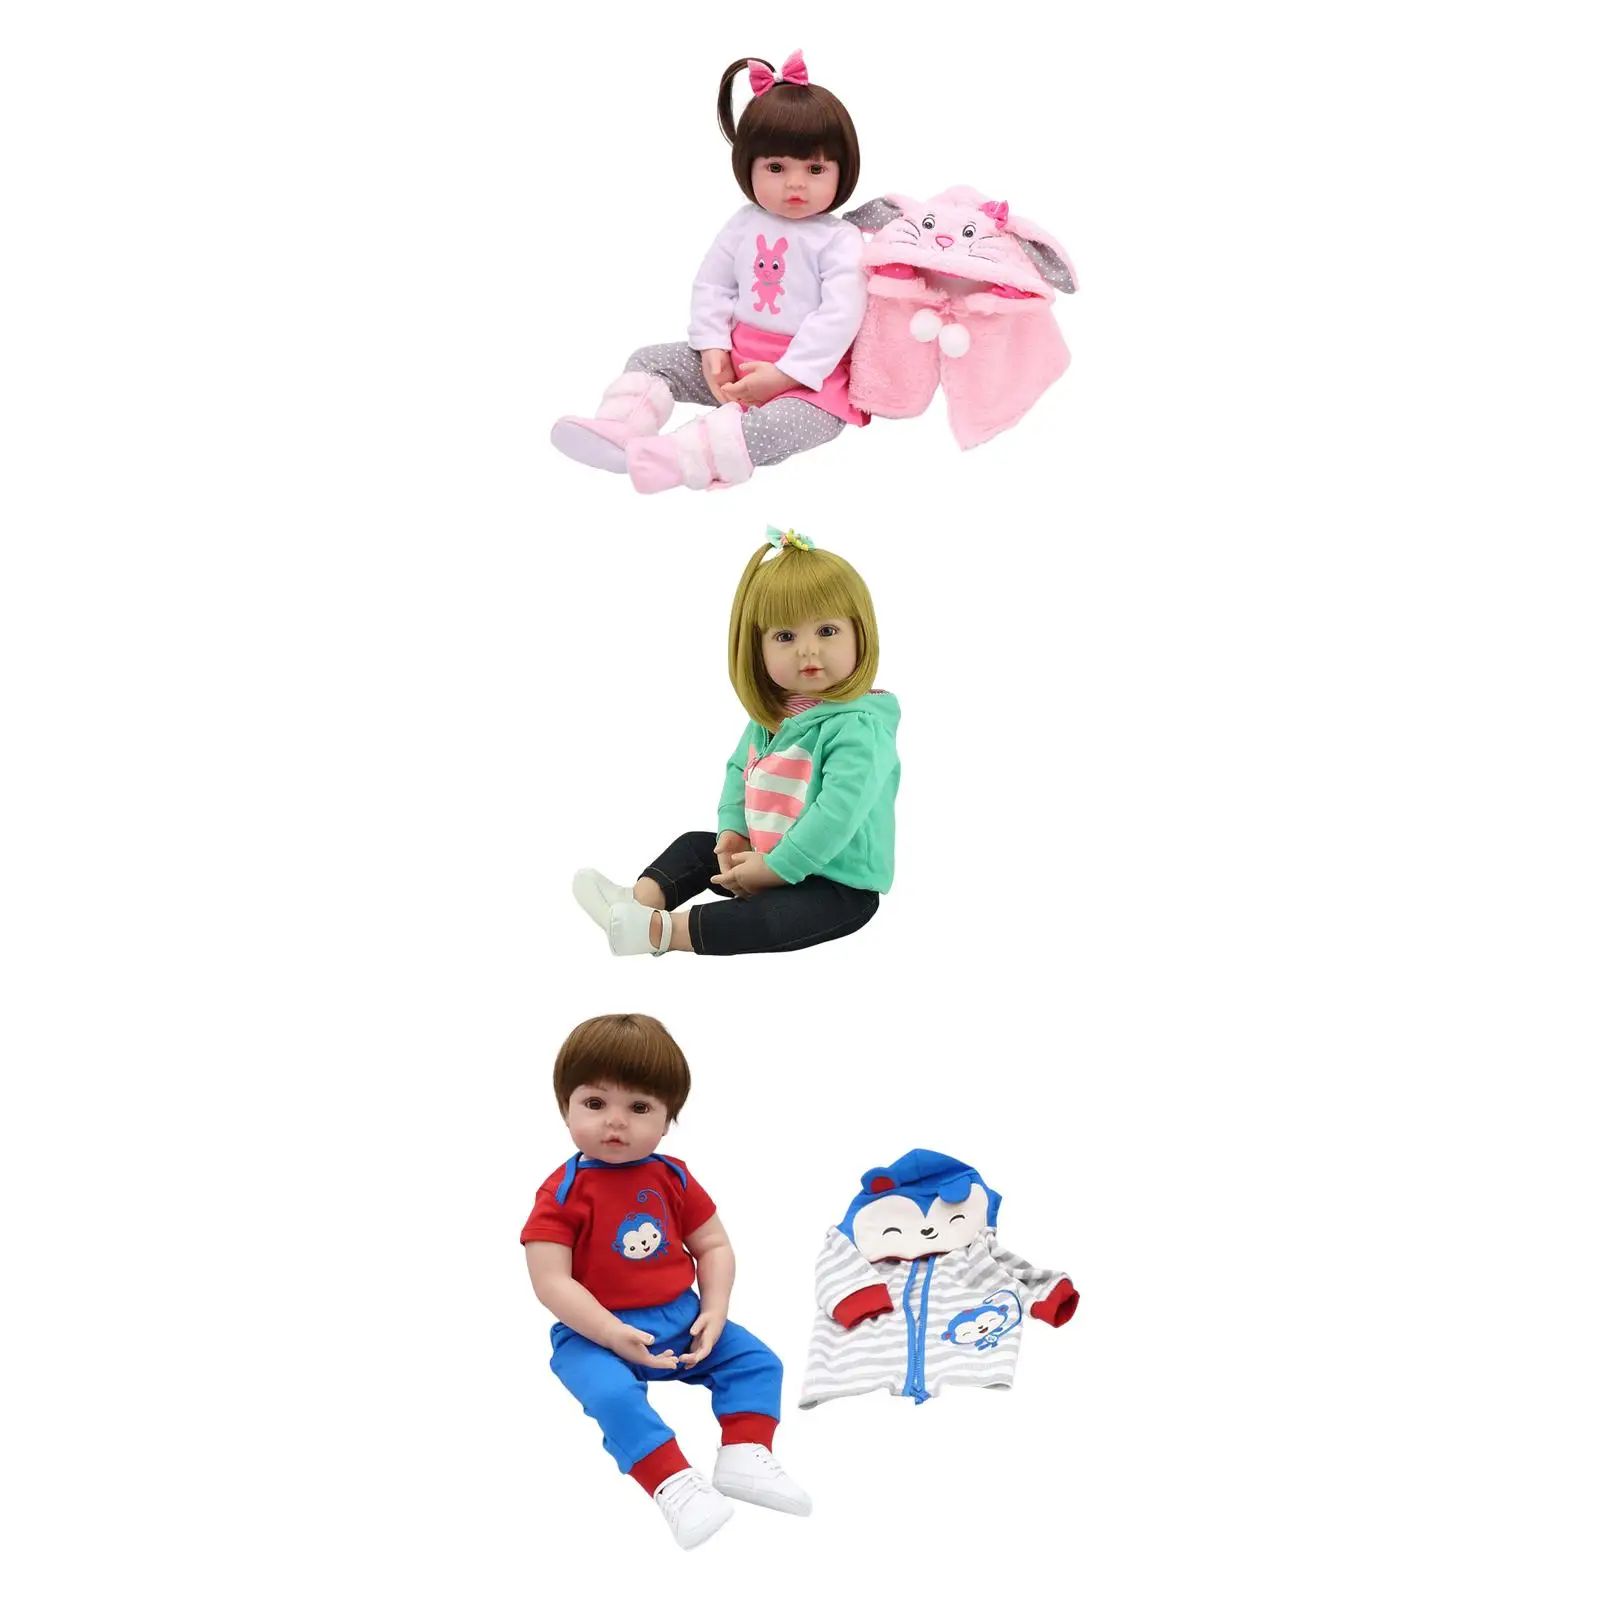 Reborn детские куклы реалистичные открытыми глазами глядя в одежде силиконовые тела малышей игрушки для детей подарки роль играют дошкольного